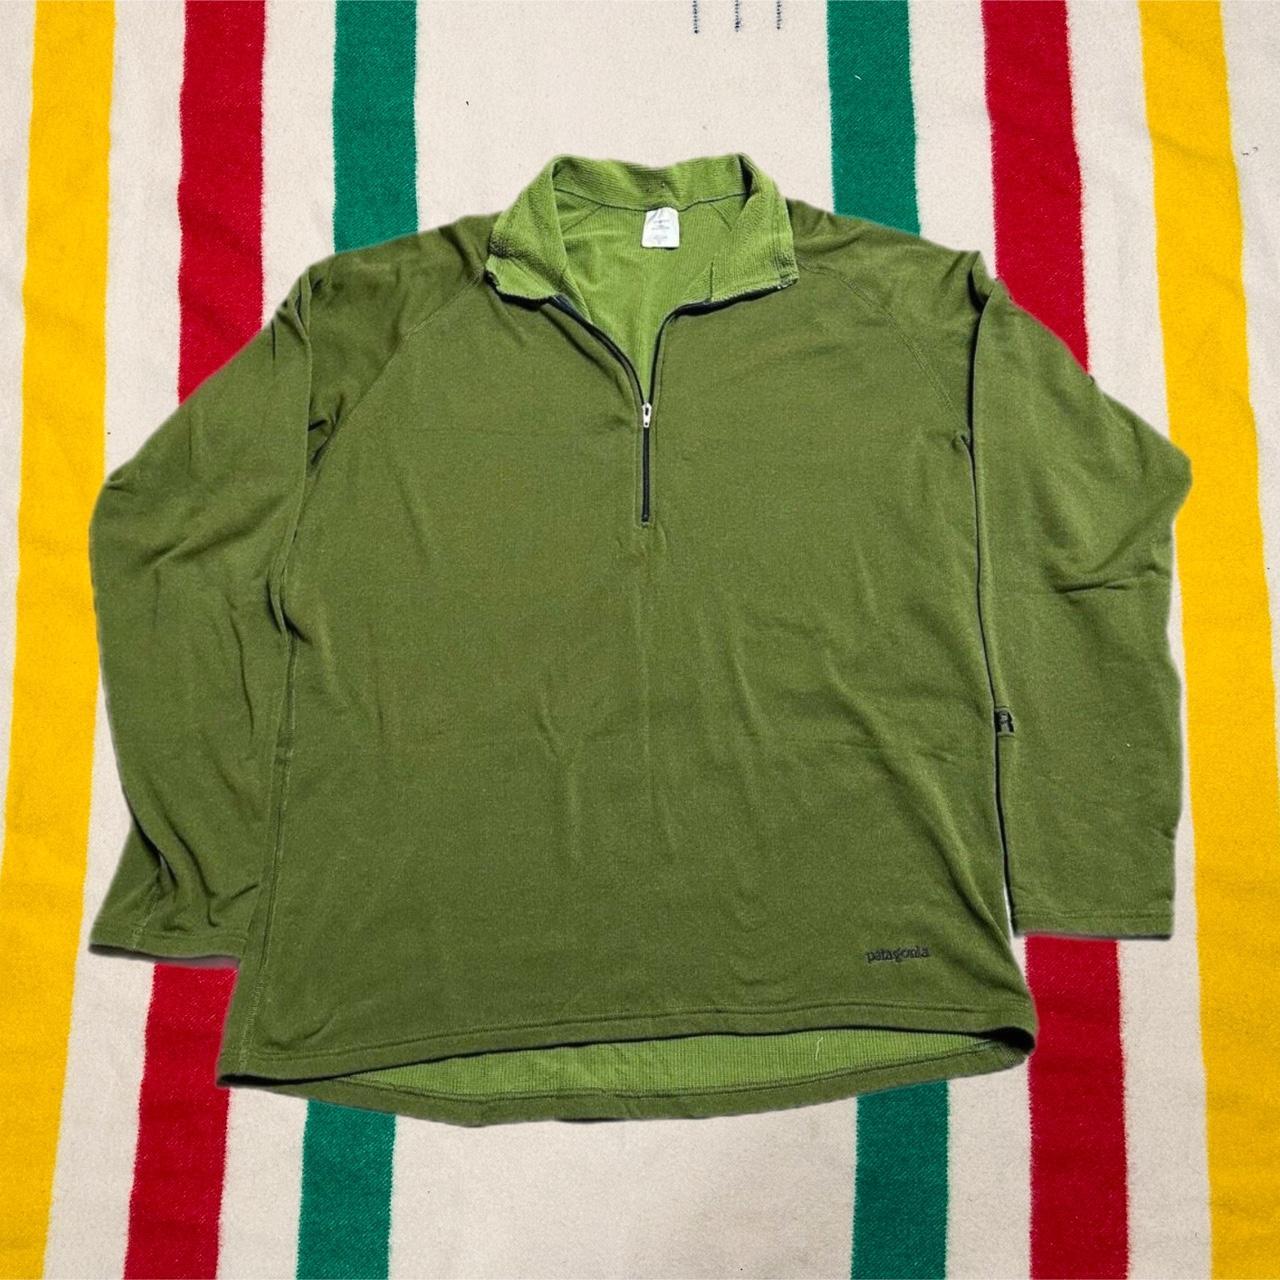 Vintage Patagonia Fleece Jacket Green R.5 Top... - Depop